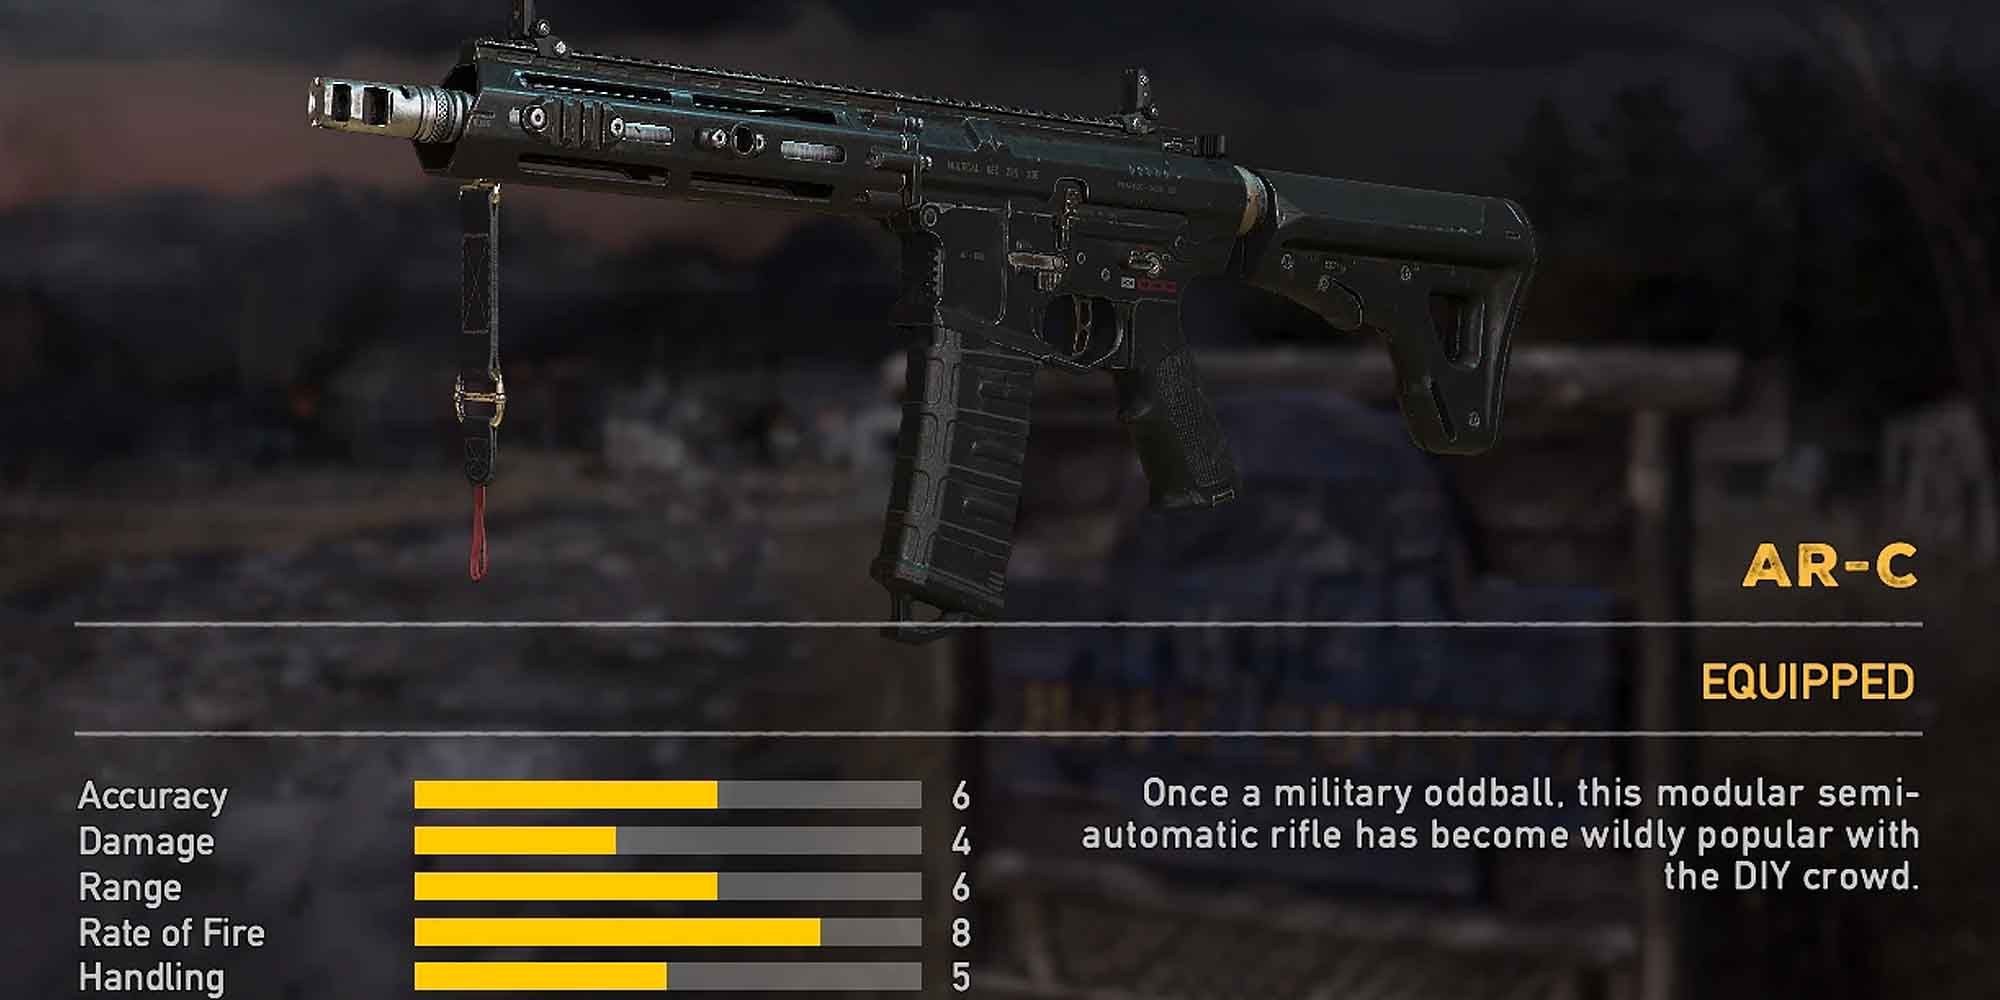 The AR-C submachine gun in Far Cry 5